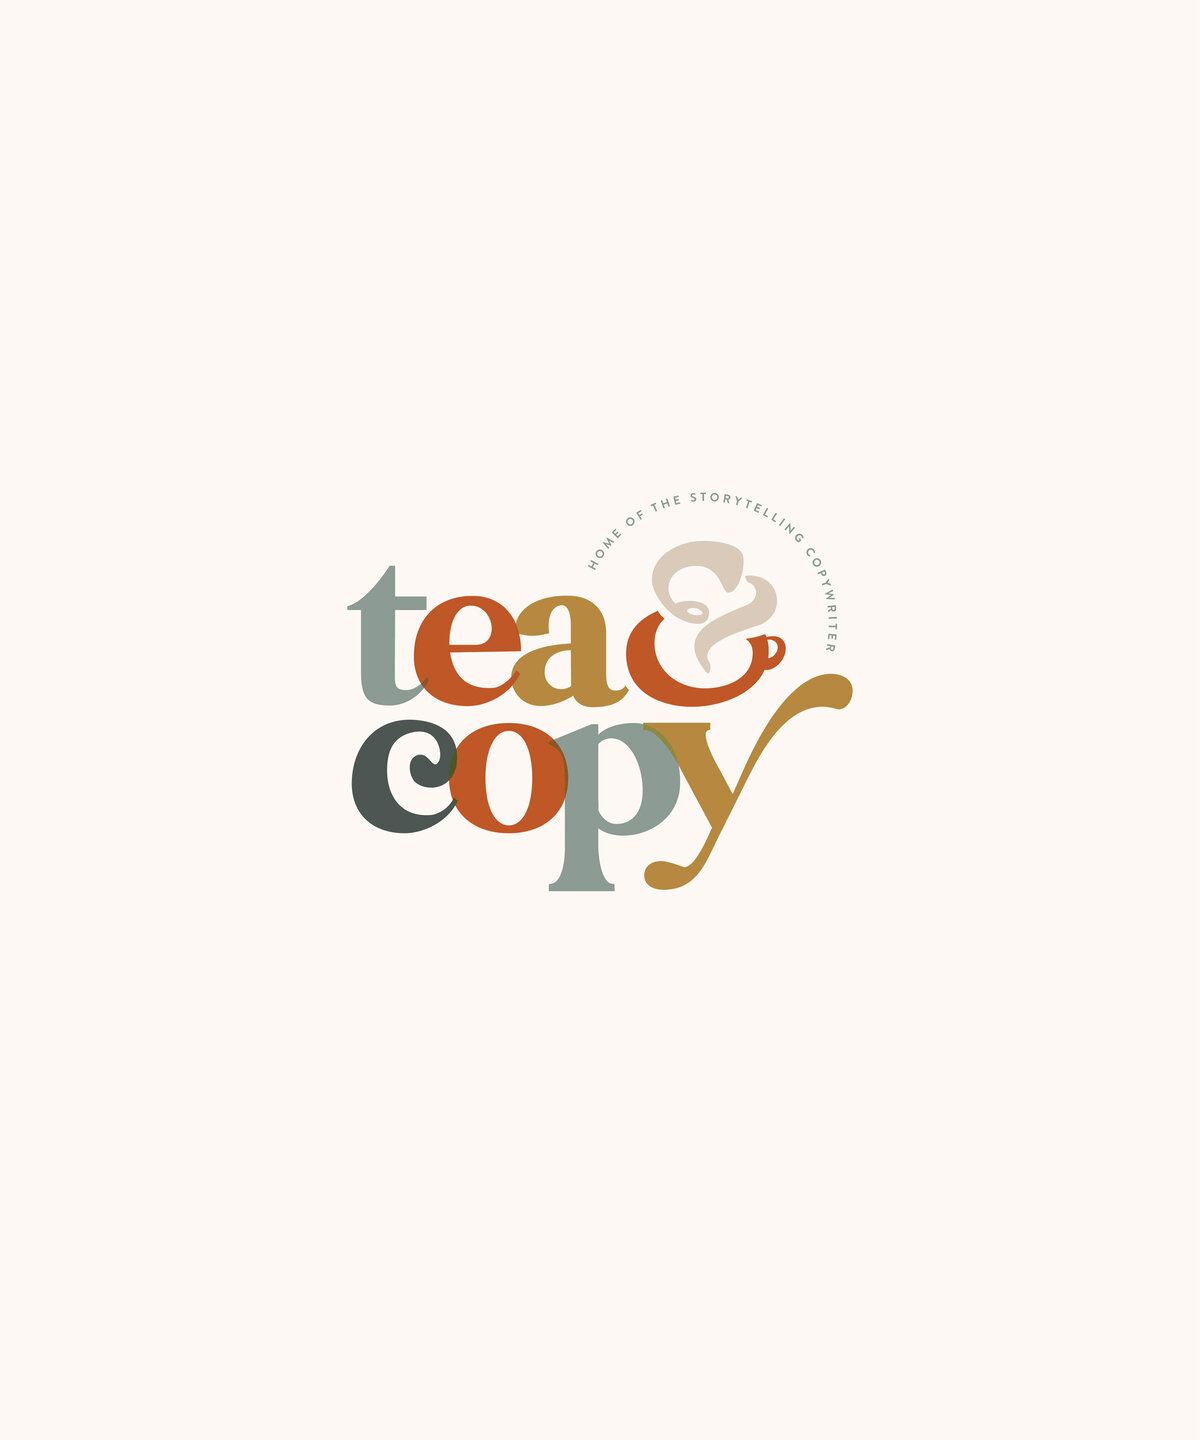 Tea & Copy [v3] FINAL-21